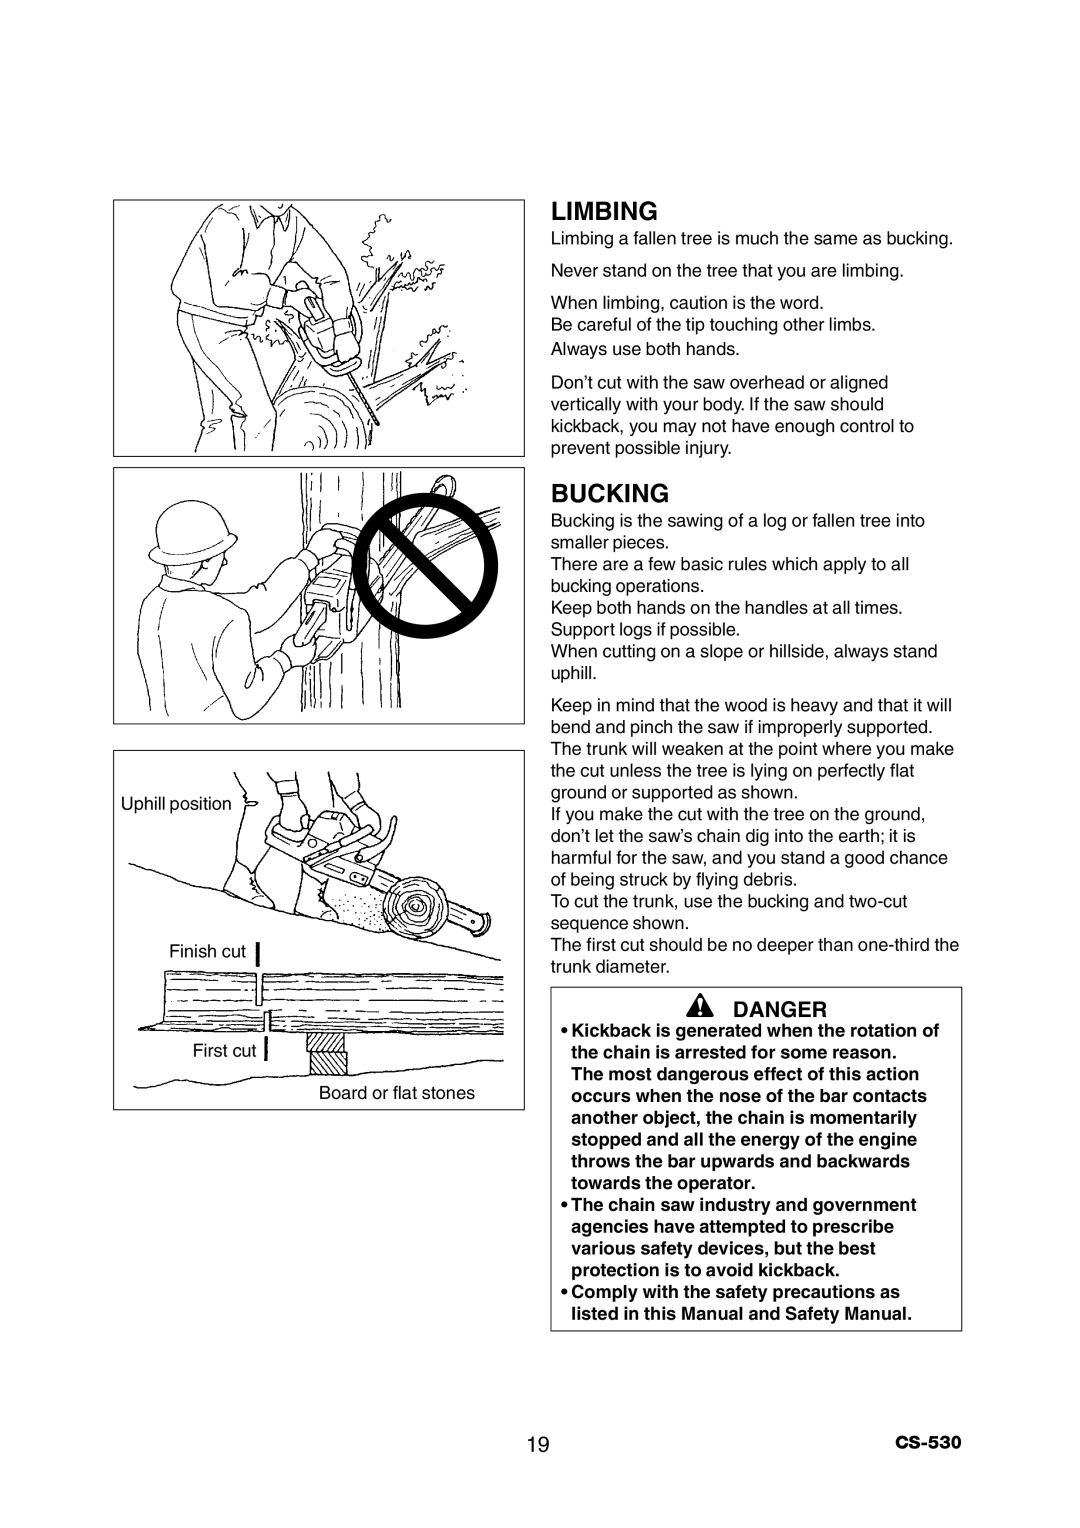 Echo CS-530 instruction manual Limbing, Bucking, Danger 